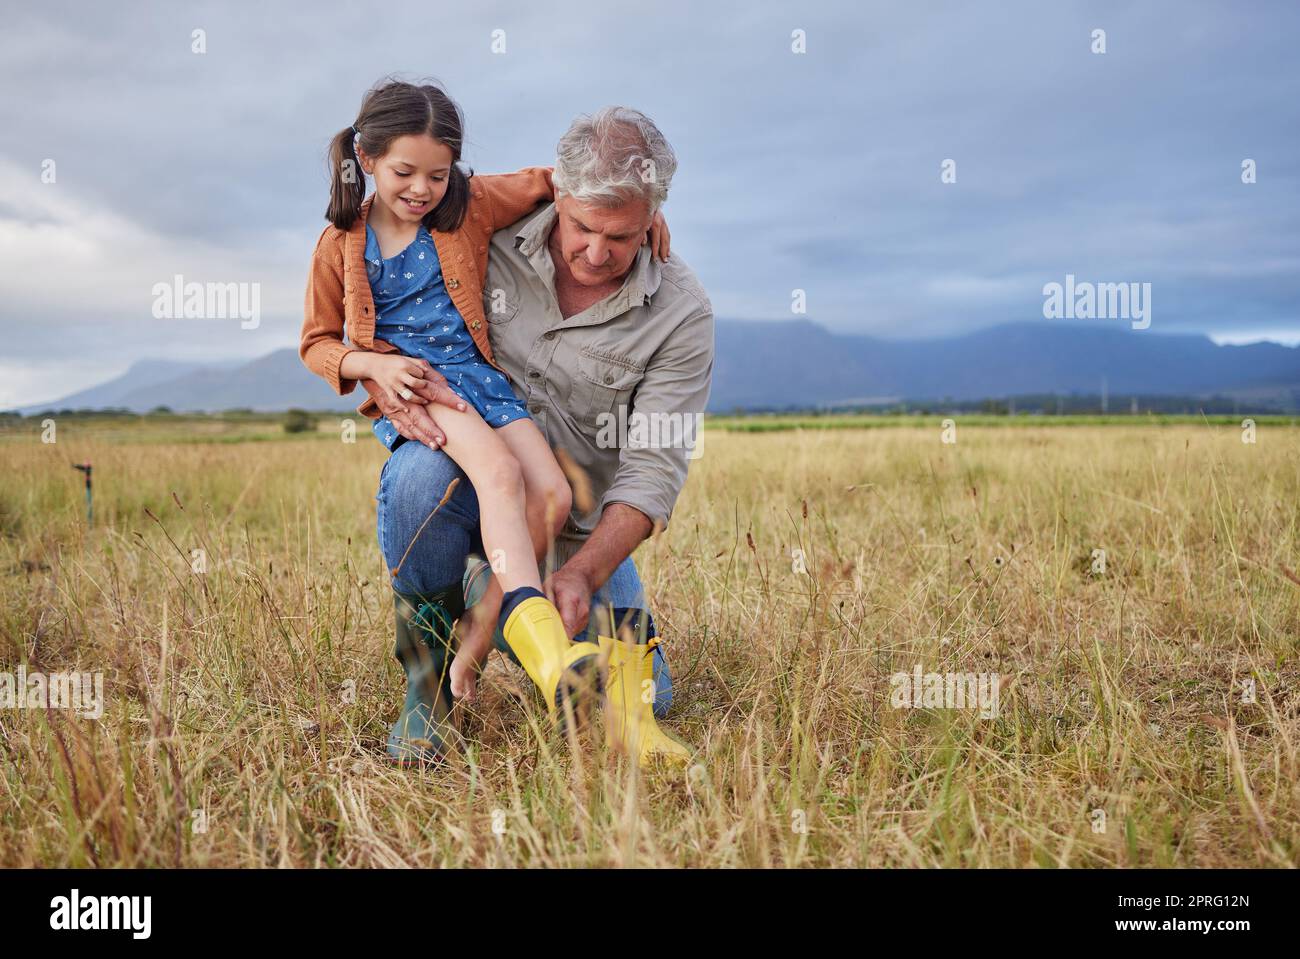 Bonne famille liant sur la ferme grand-parent et fille ayant le plaisir dans la nature, préparez-vous à marcher ensemble. Un enfant souriant et un grand-père attentionné explorant l'extérieur, en profitant d'une promenade dans la campagne ou le champ Banque D'Images